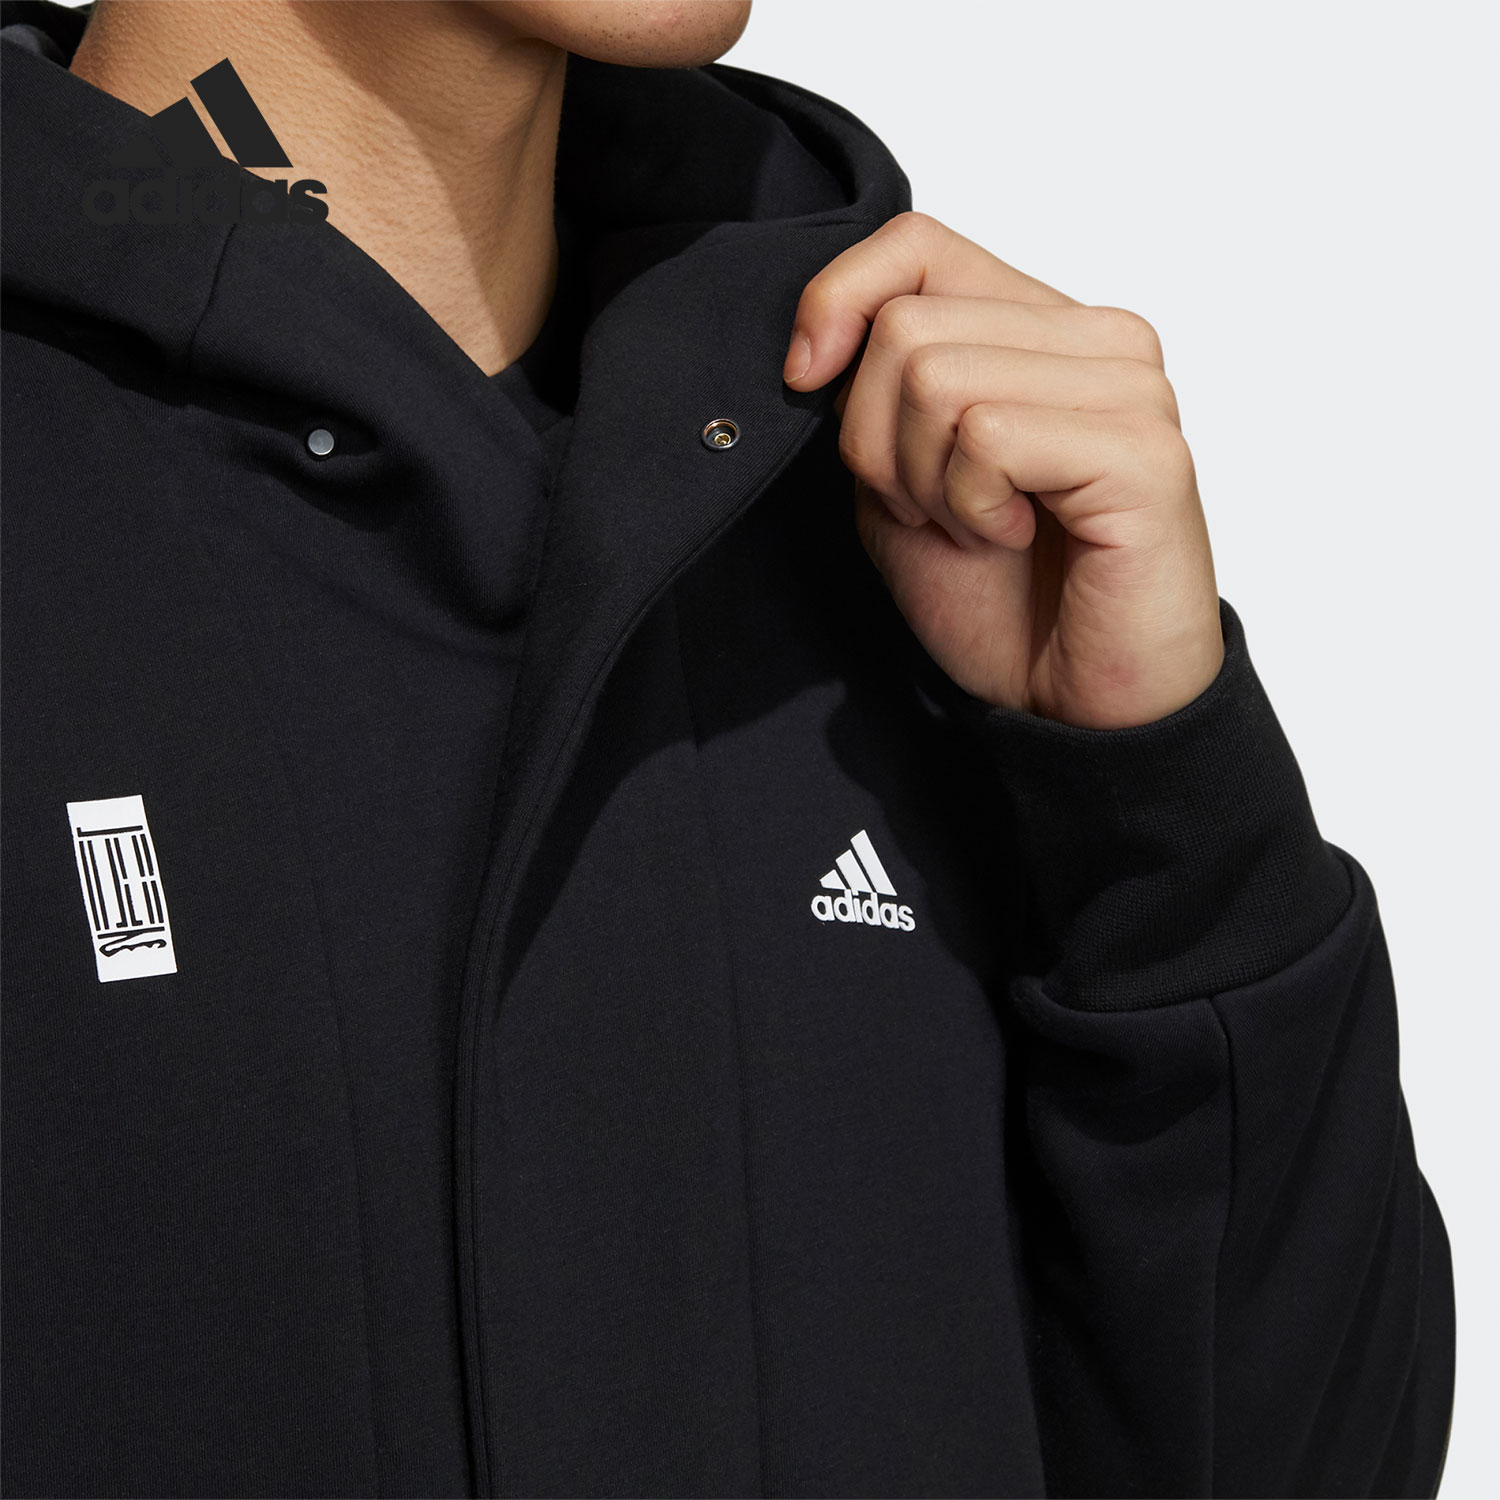 Adidas/阿迪达斯正品武极系列男子连帽运动夹克外套 H39296-图2